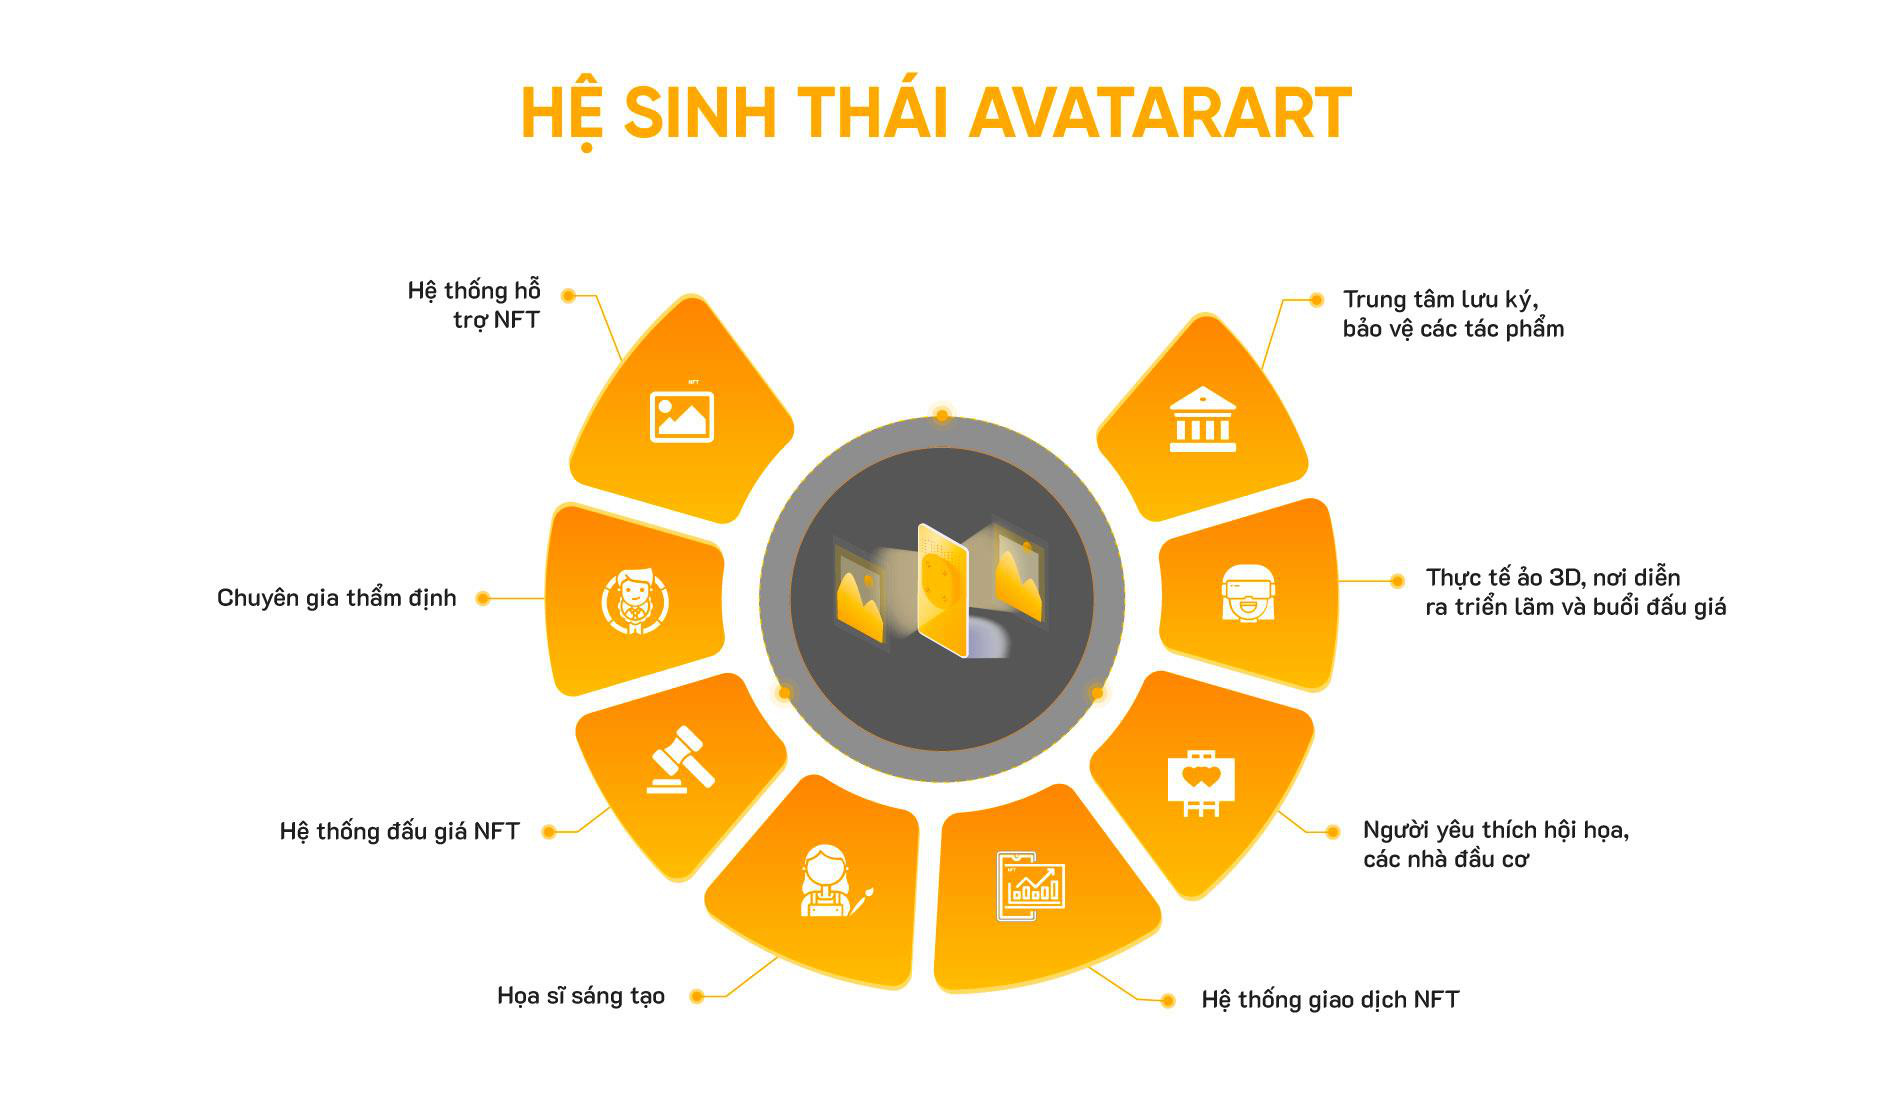 AvatarArt: Cơ hội đưa tác phẩm nghệ thuật vào ‘không gian số’-dulichgiaitri.vn